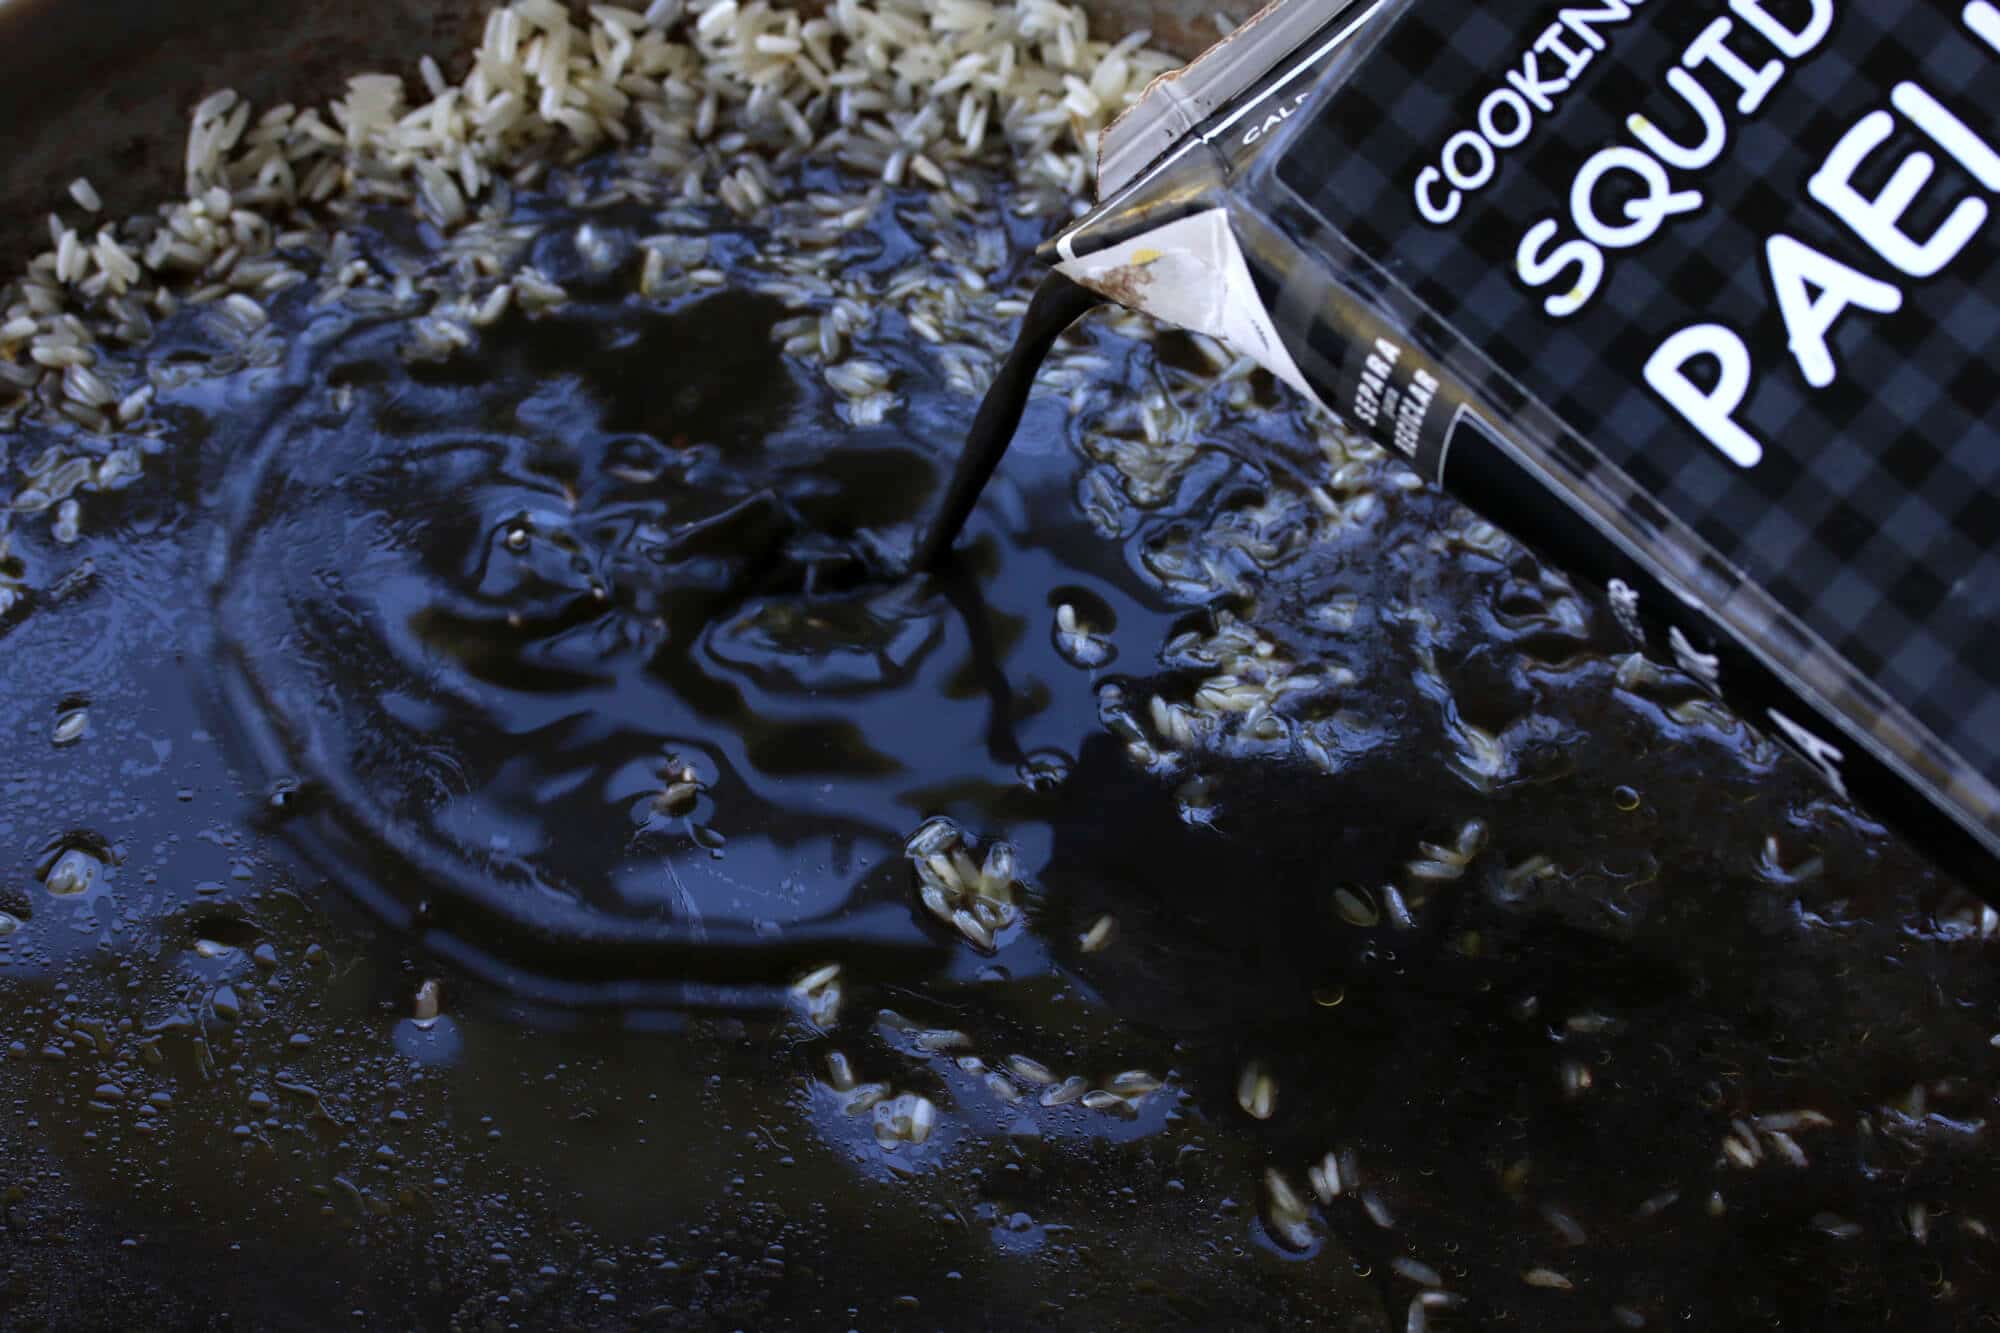 squid ink paella black rice arroz negro arros negre spanish recipe puerto rican cuban